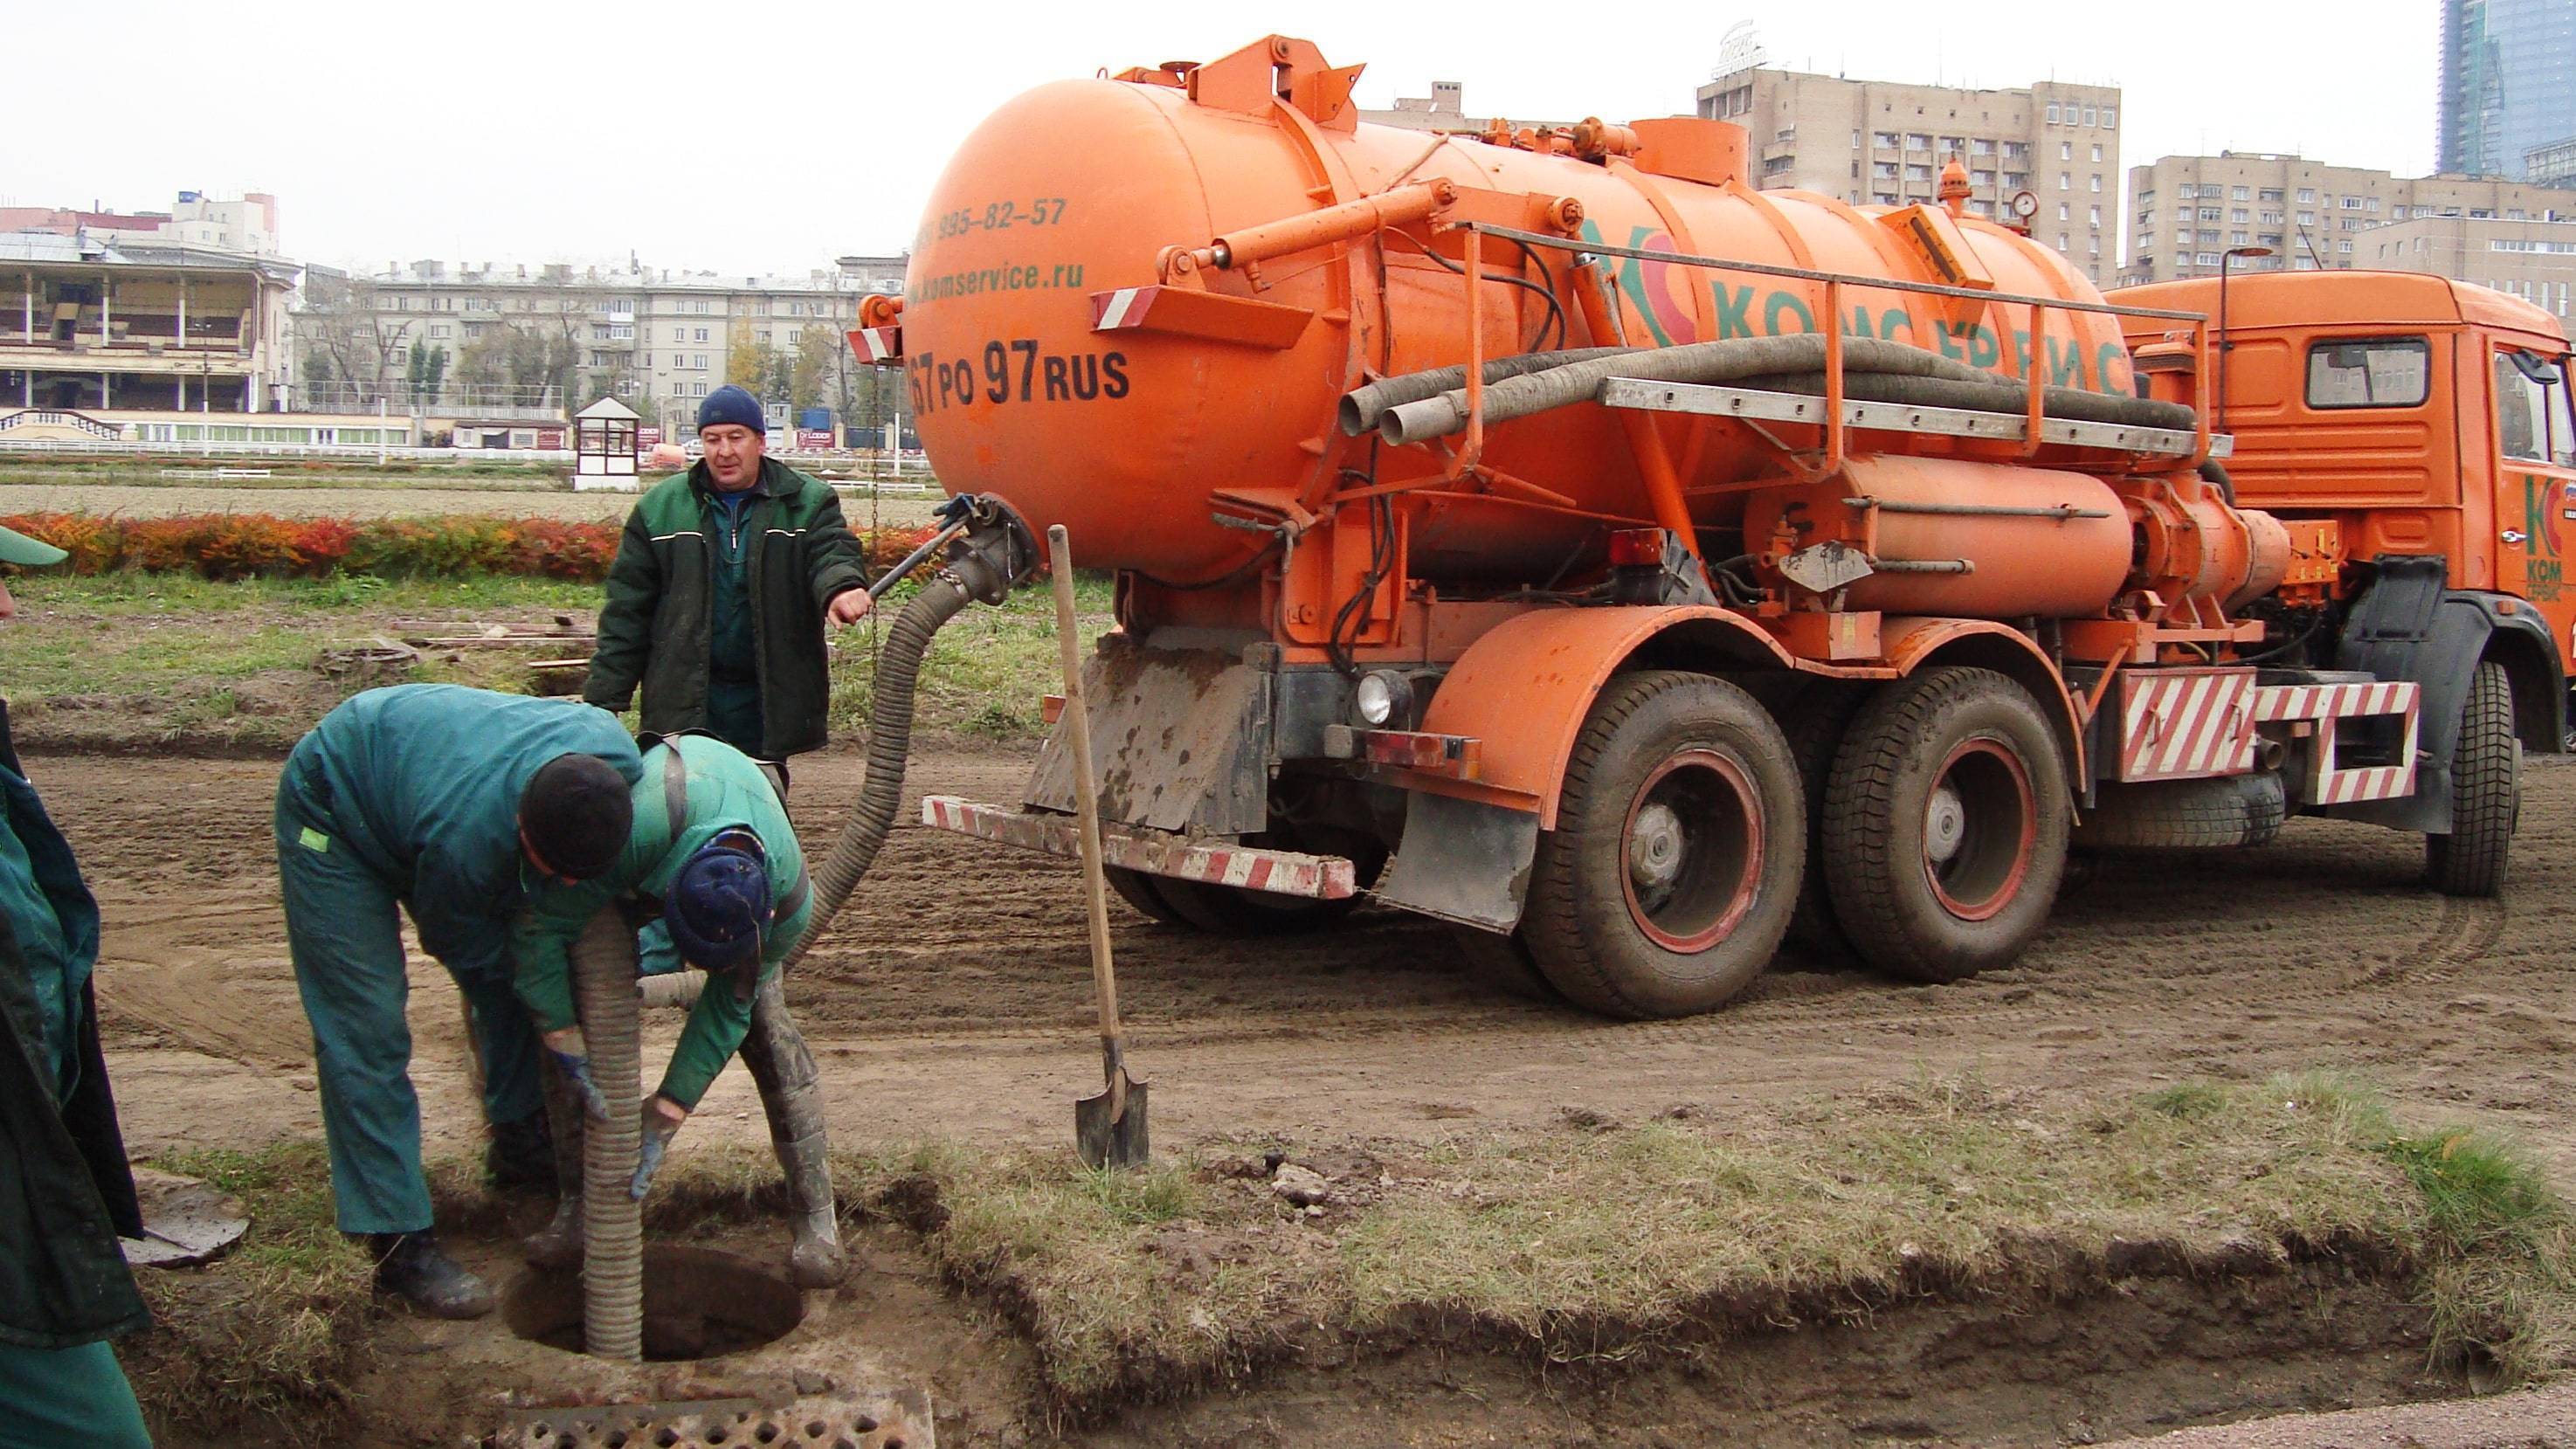 Прочистка канализации, очистка канализационных труб в частном доме по лучшей цене в москве